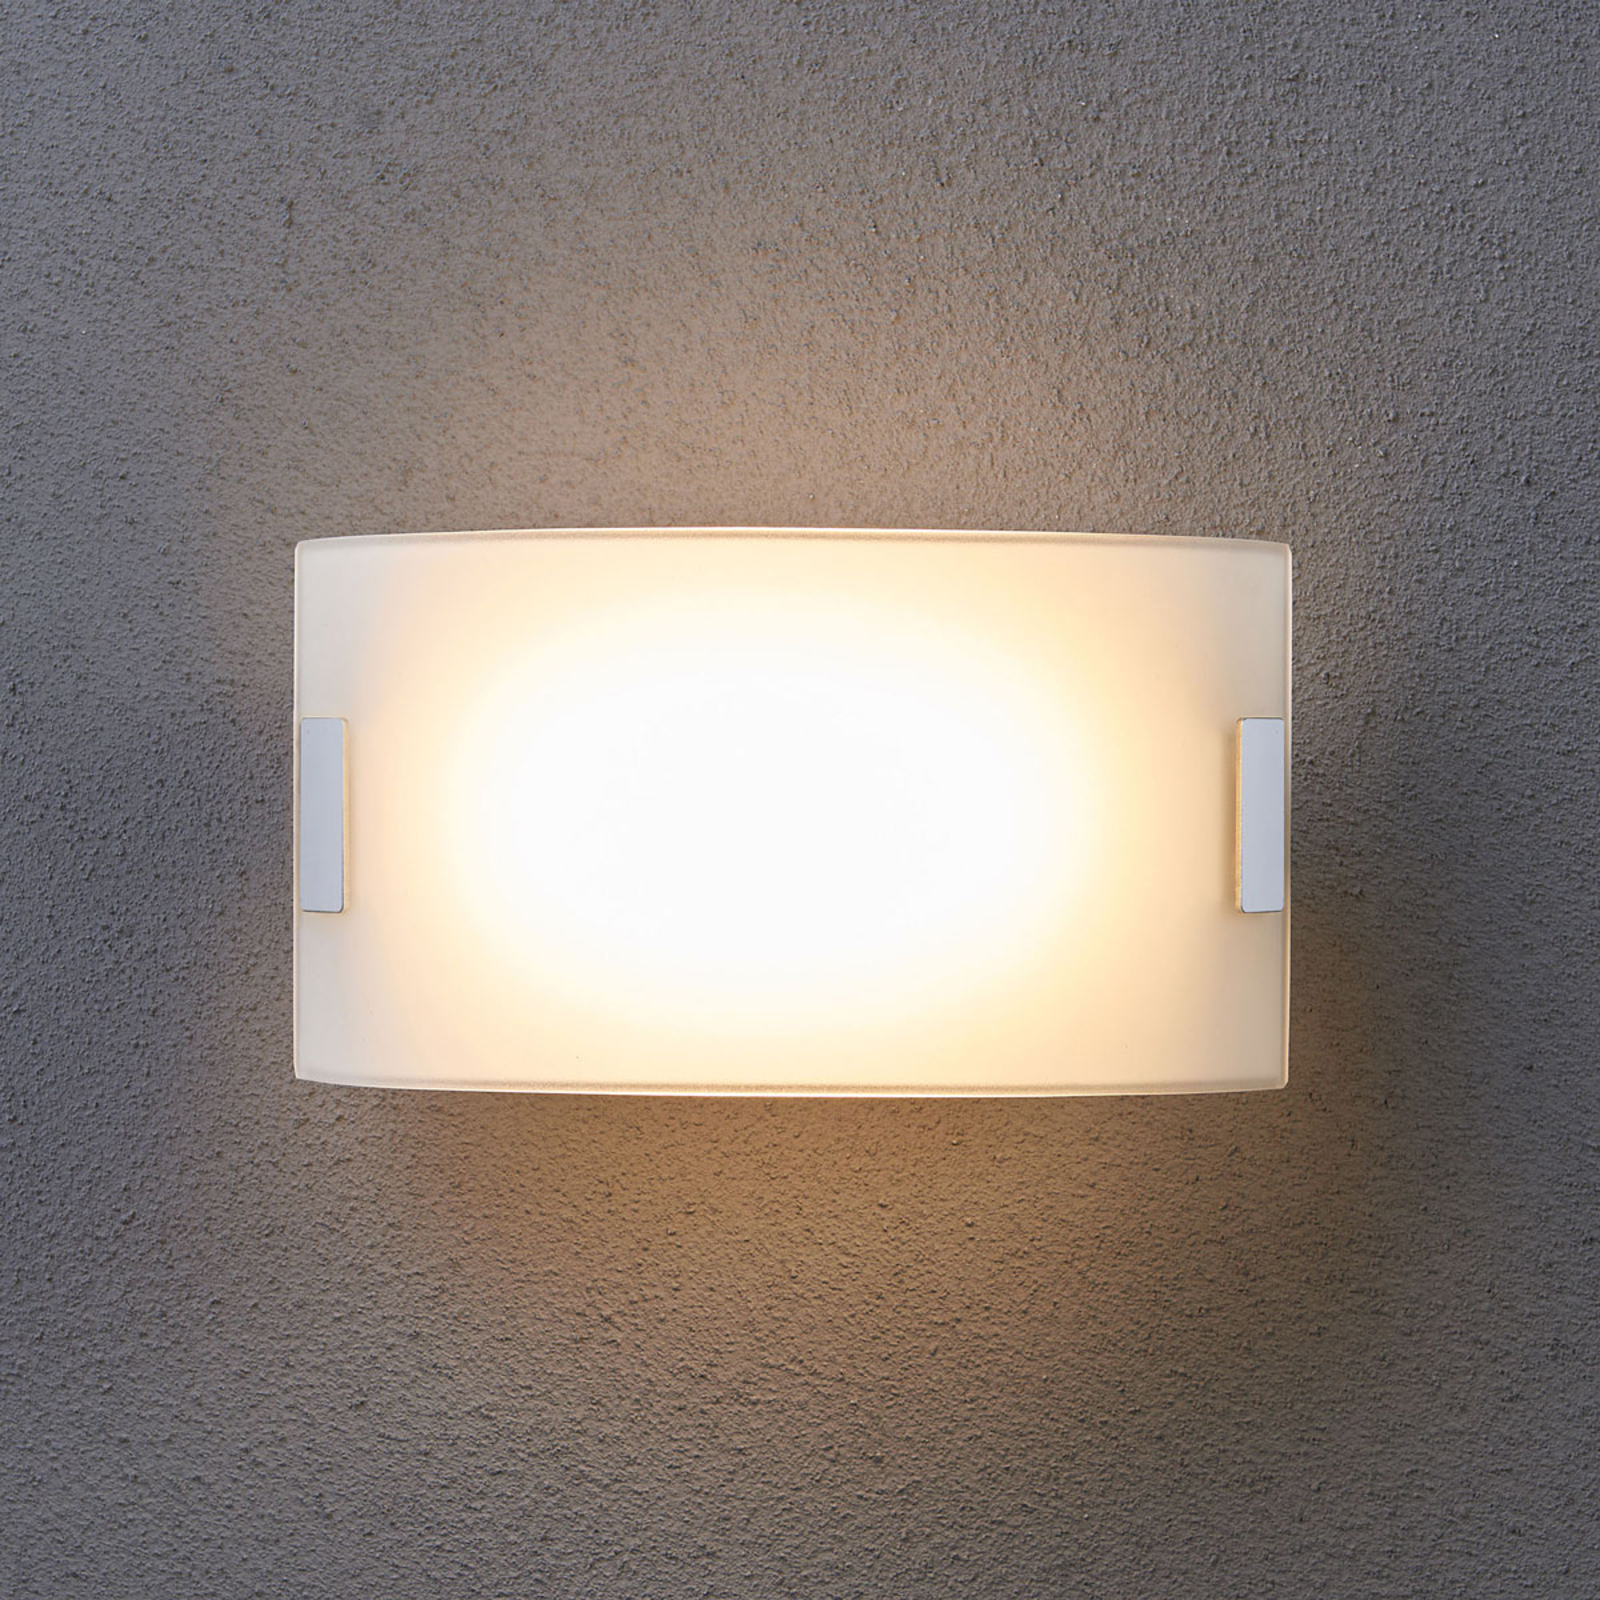 Witte glazen wandlamp Gisela met LED lampen.